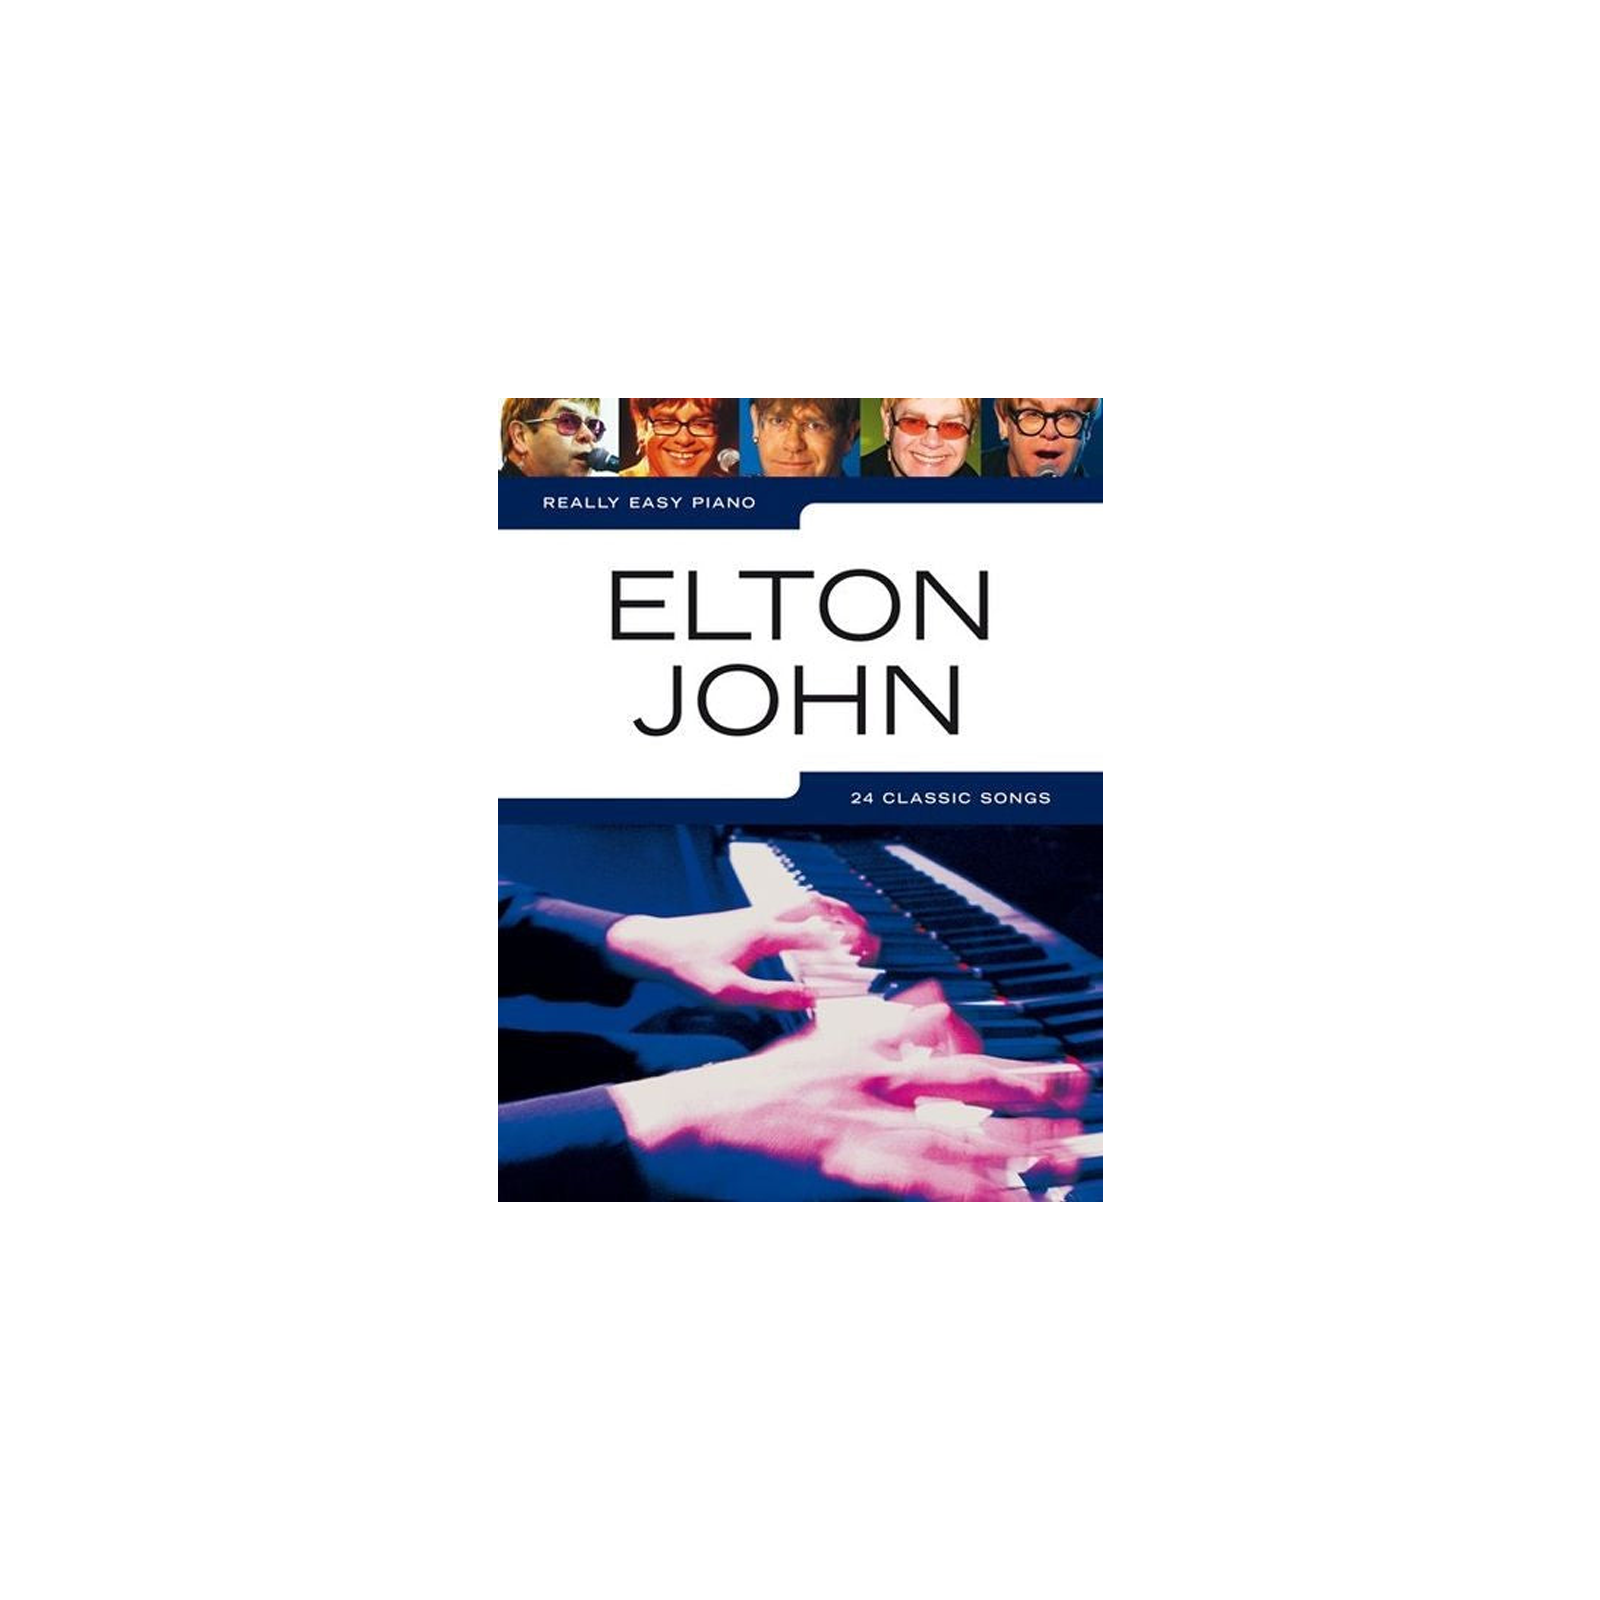 Really Easy Piano Book: Elton John